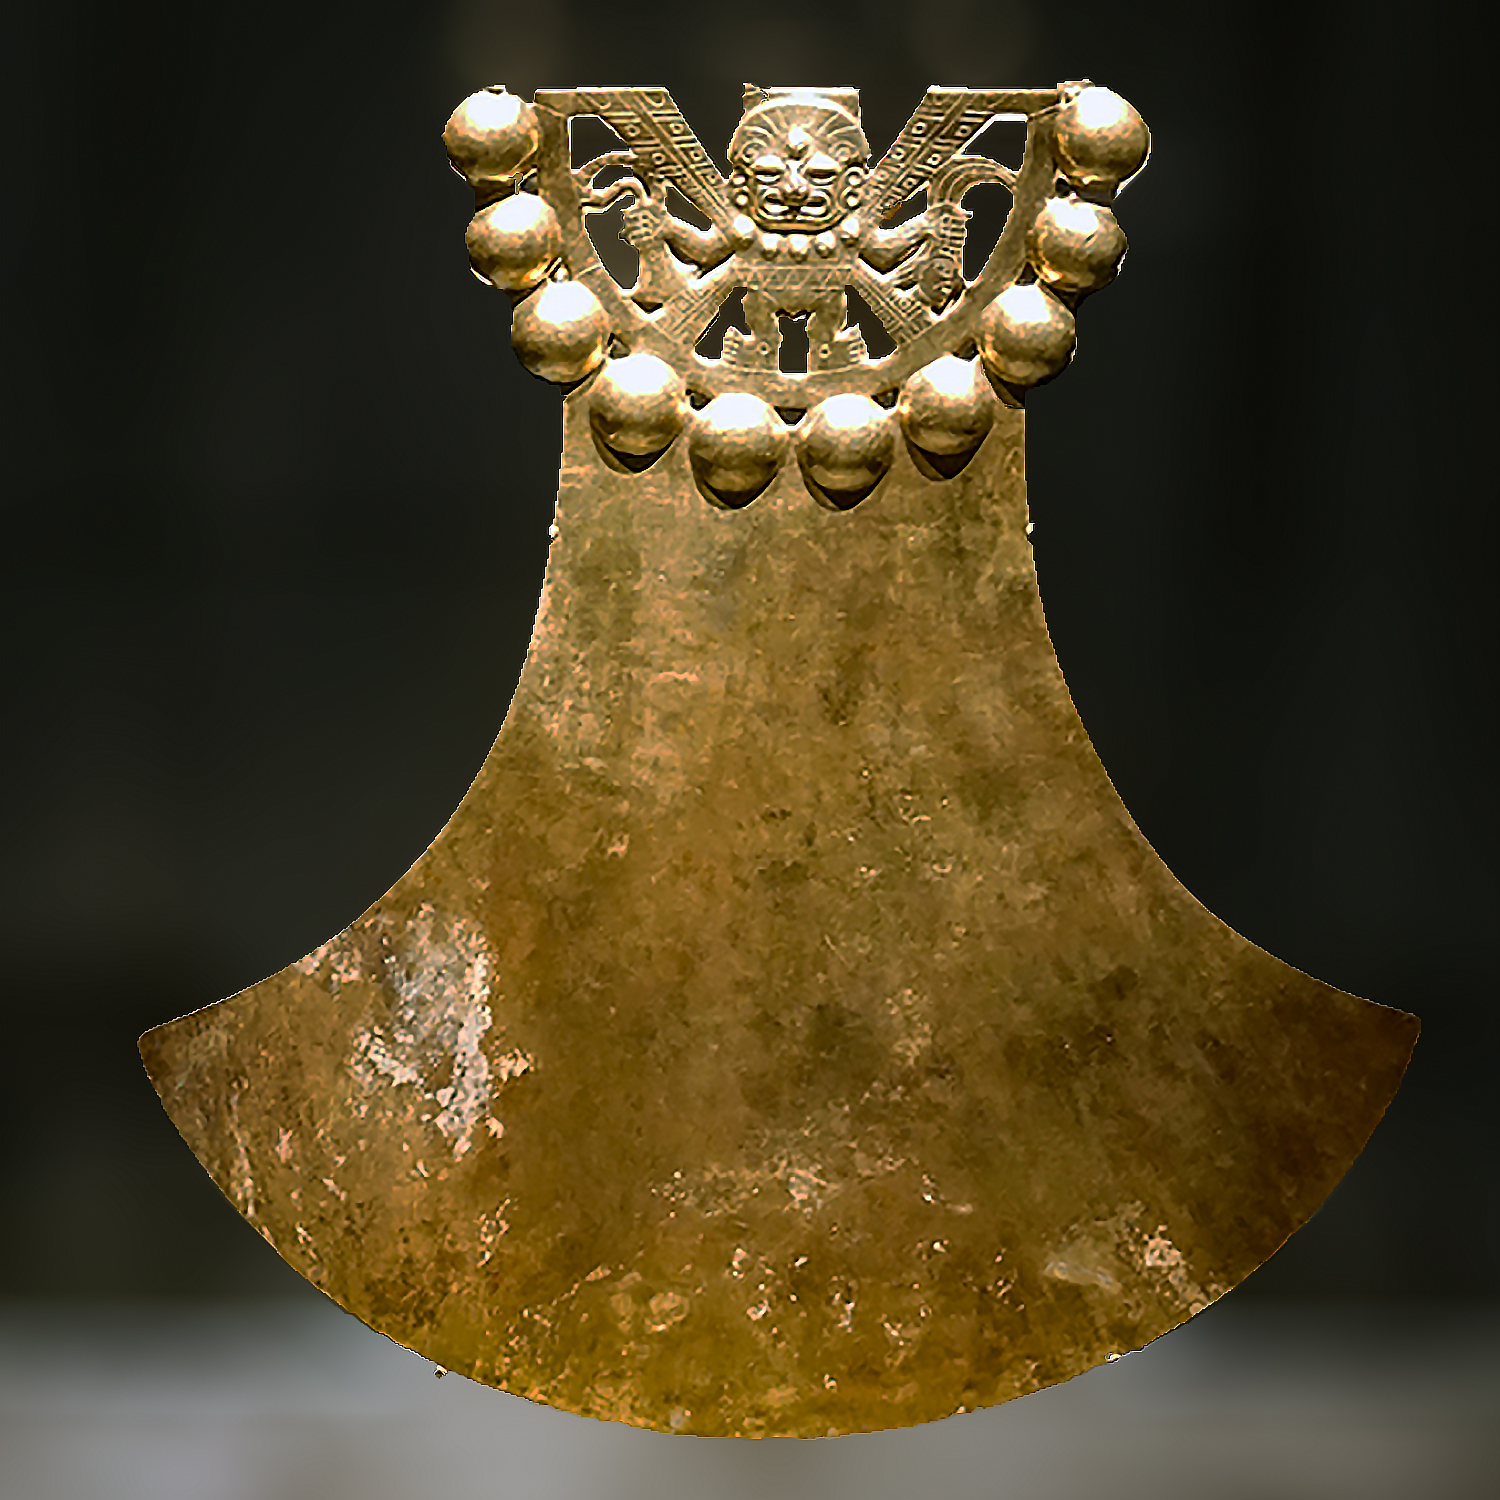 Украшение с погремушками. Моче, 625-645 гг. н.э. Коллекция Museo de la Nación, Lima.